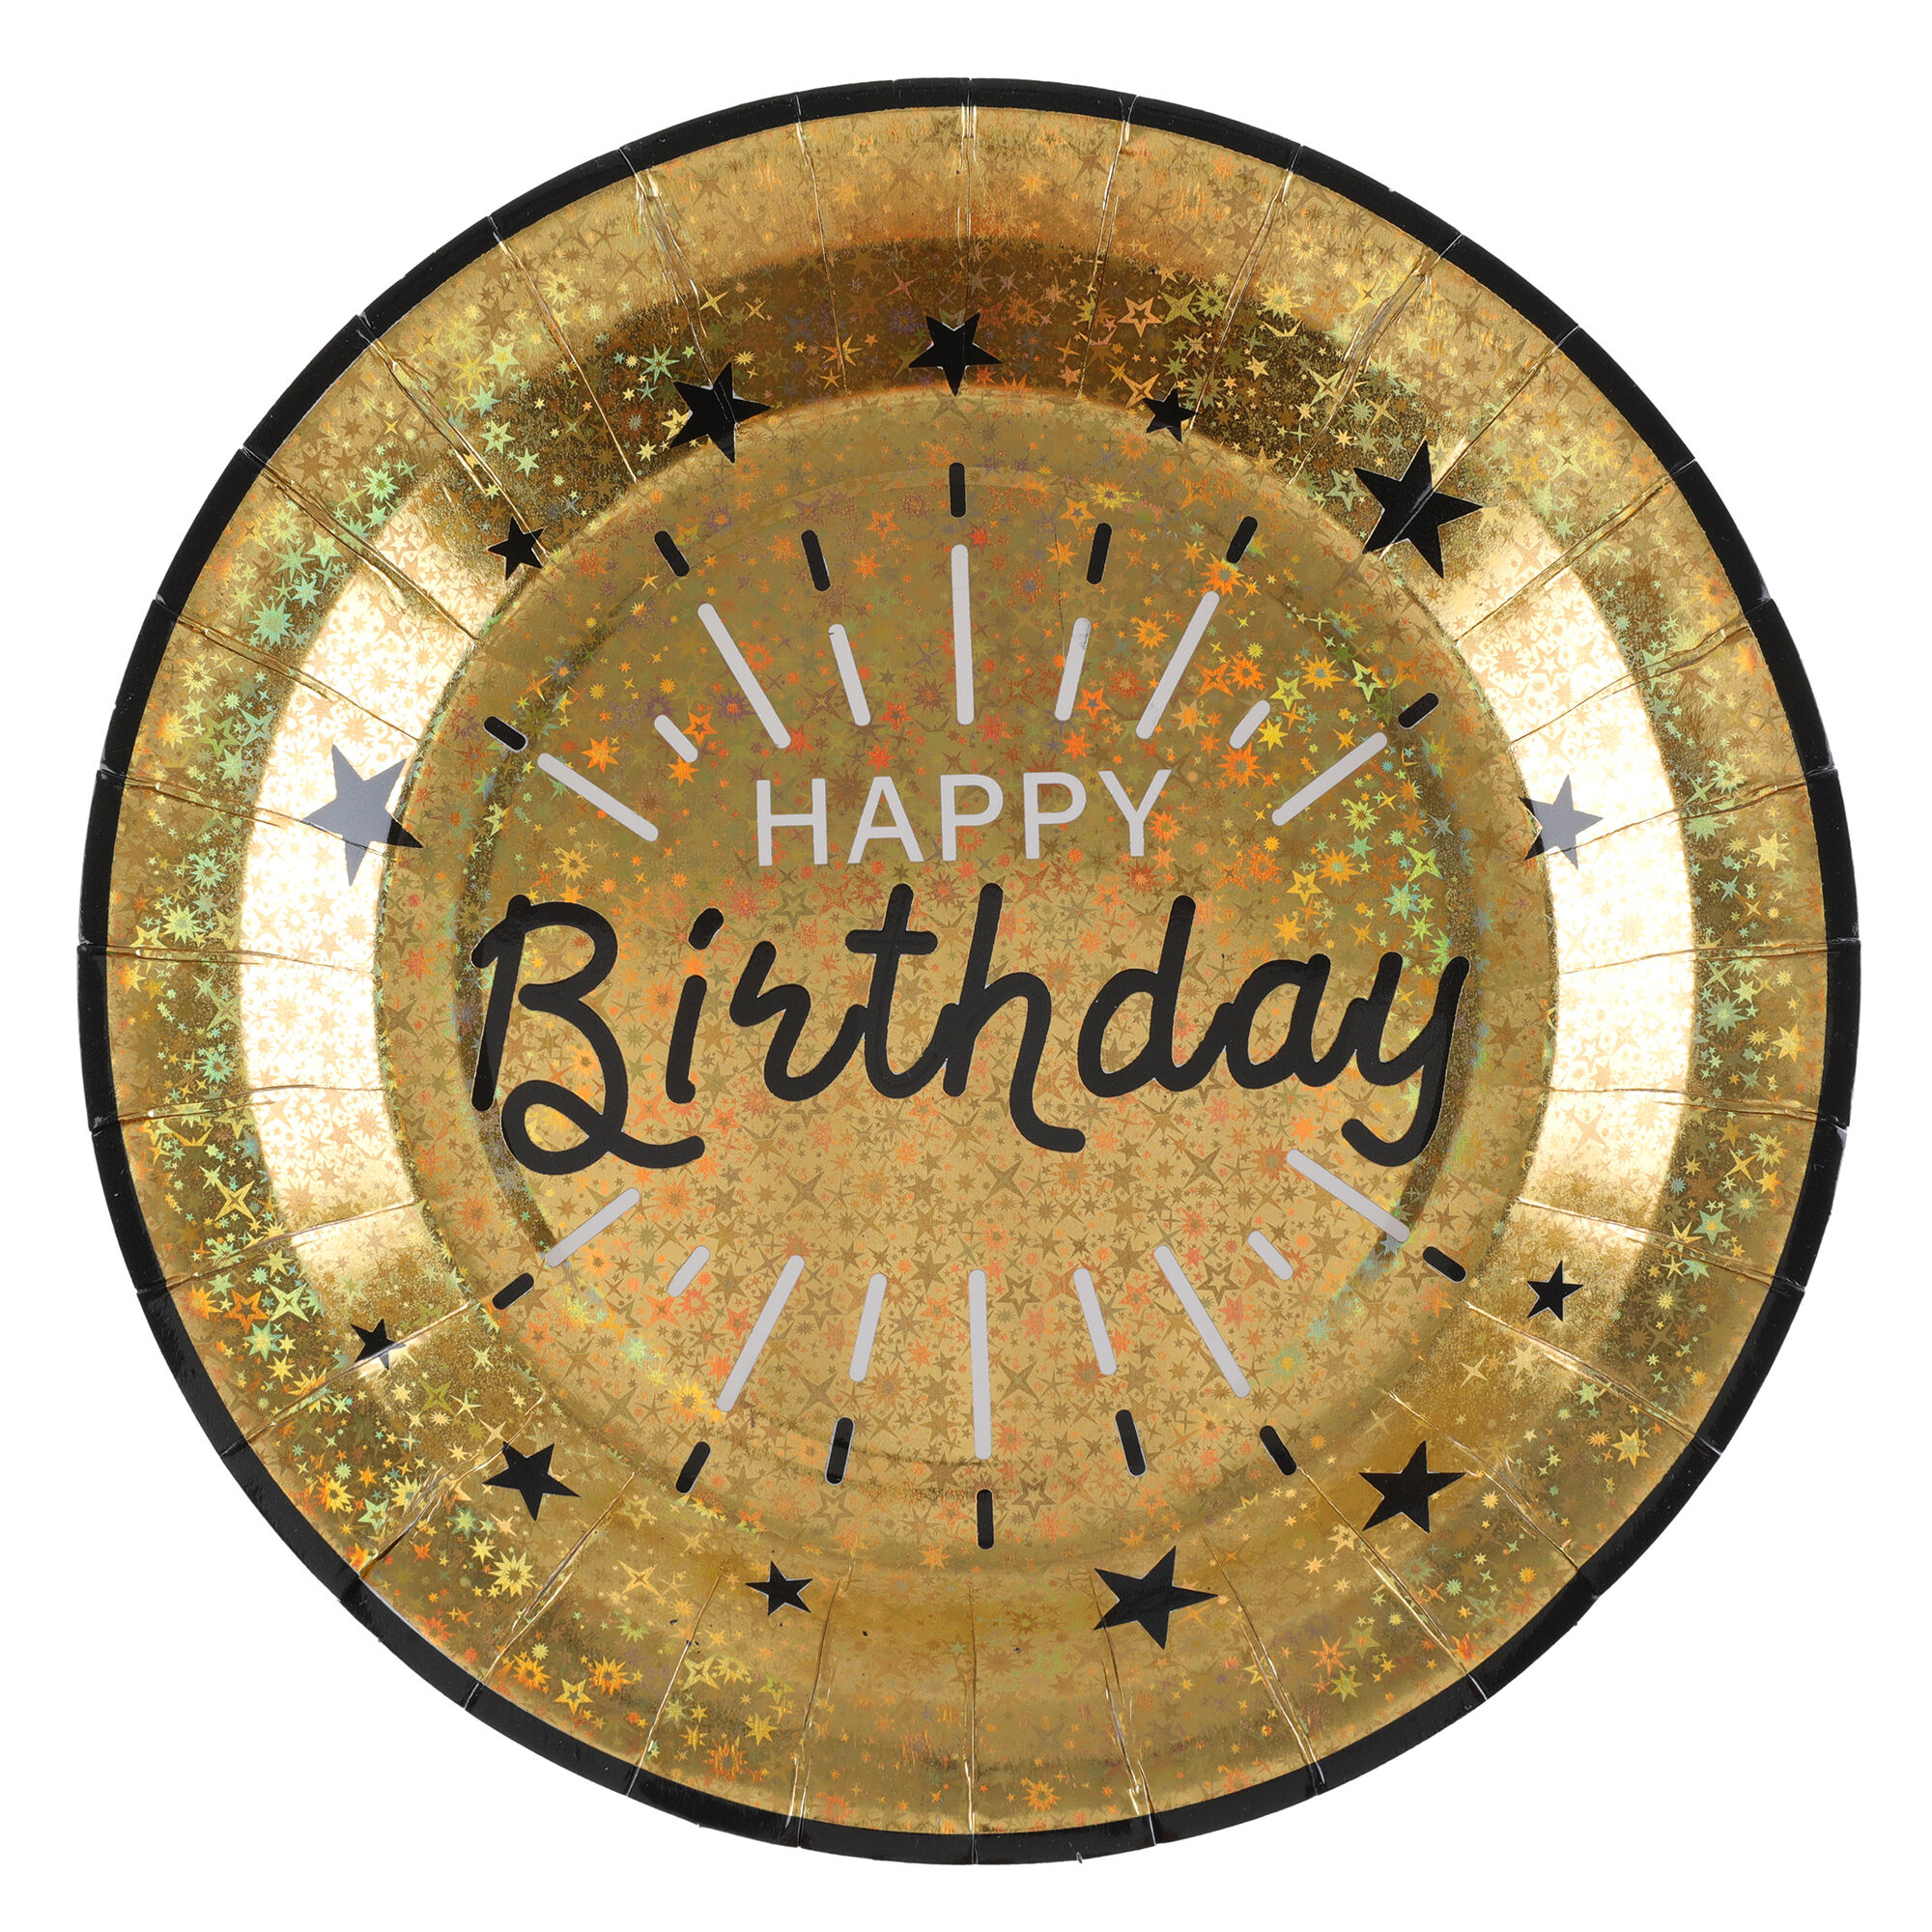 NEU Papp-Teller Happy Birthday, gold-schwarz, 10 Stück, ca. 23 x 23cm